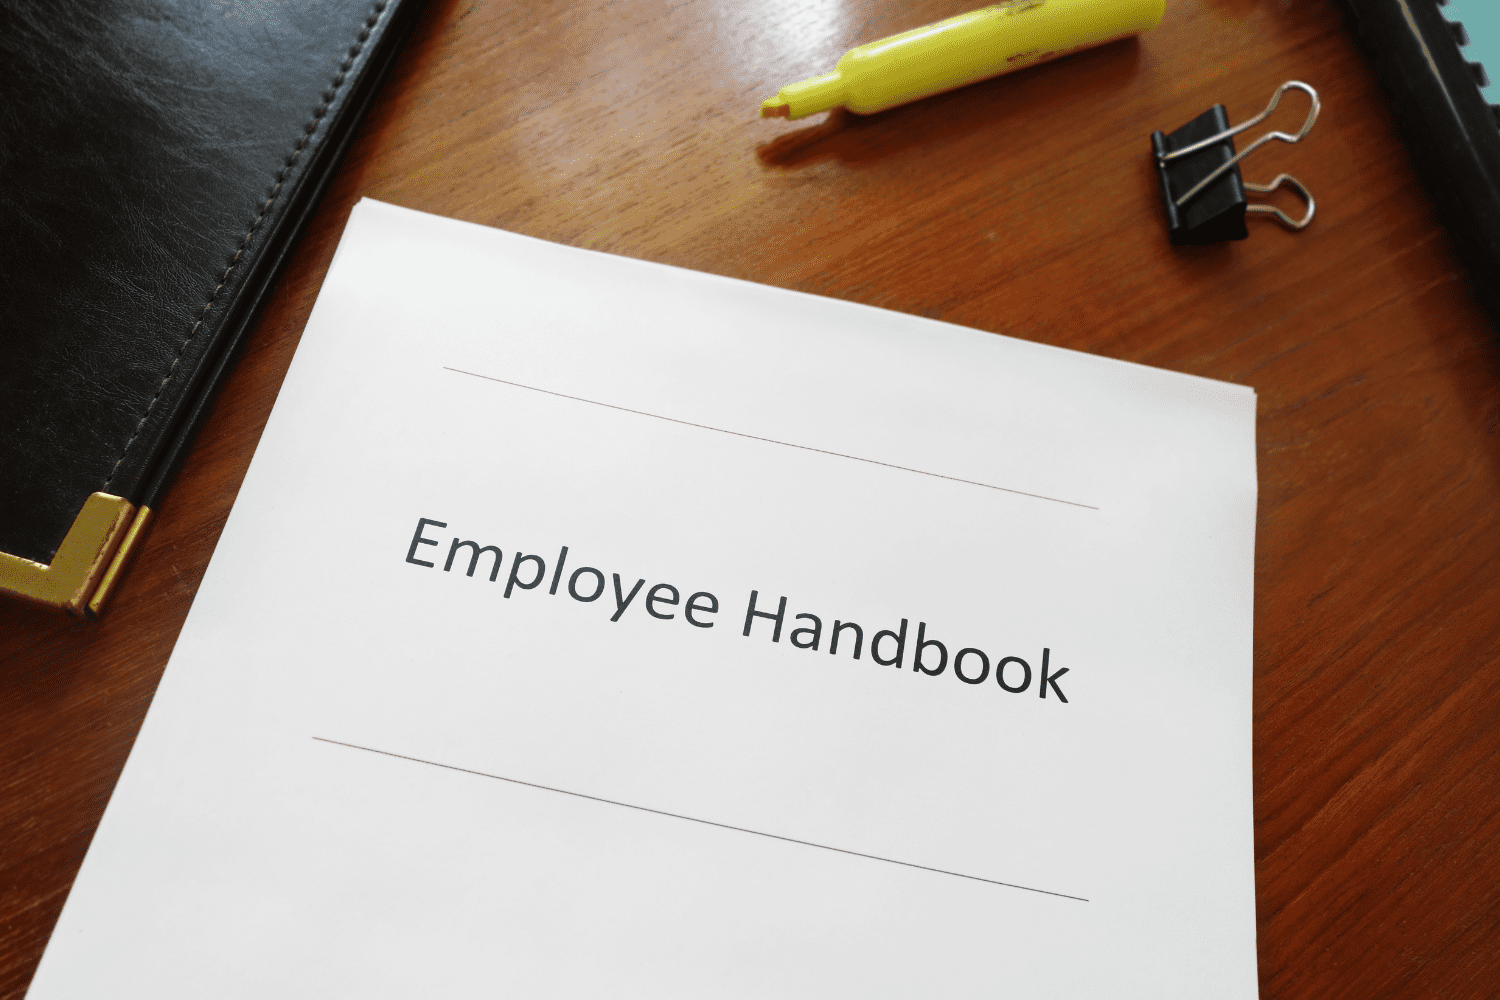 employee handbook brief